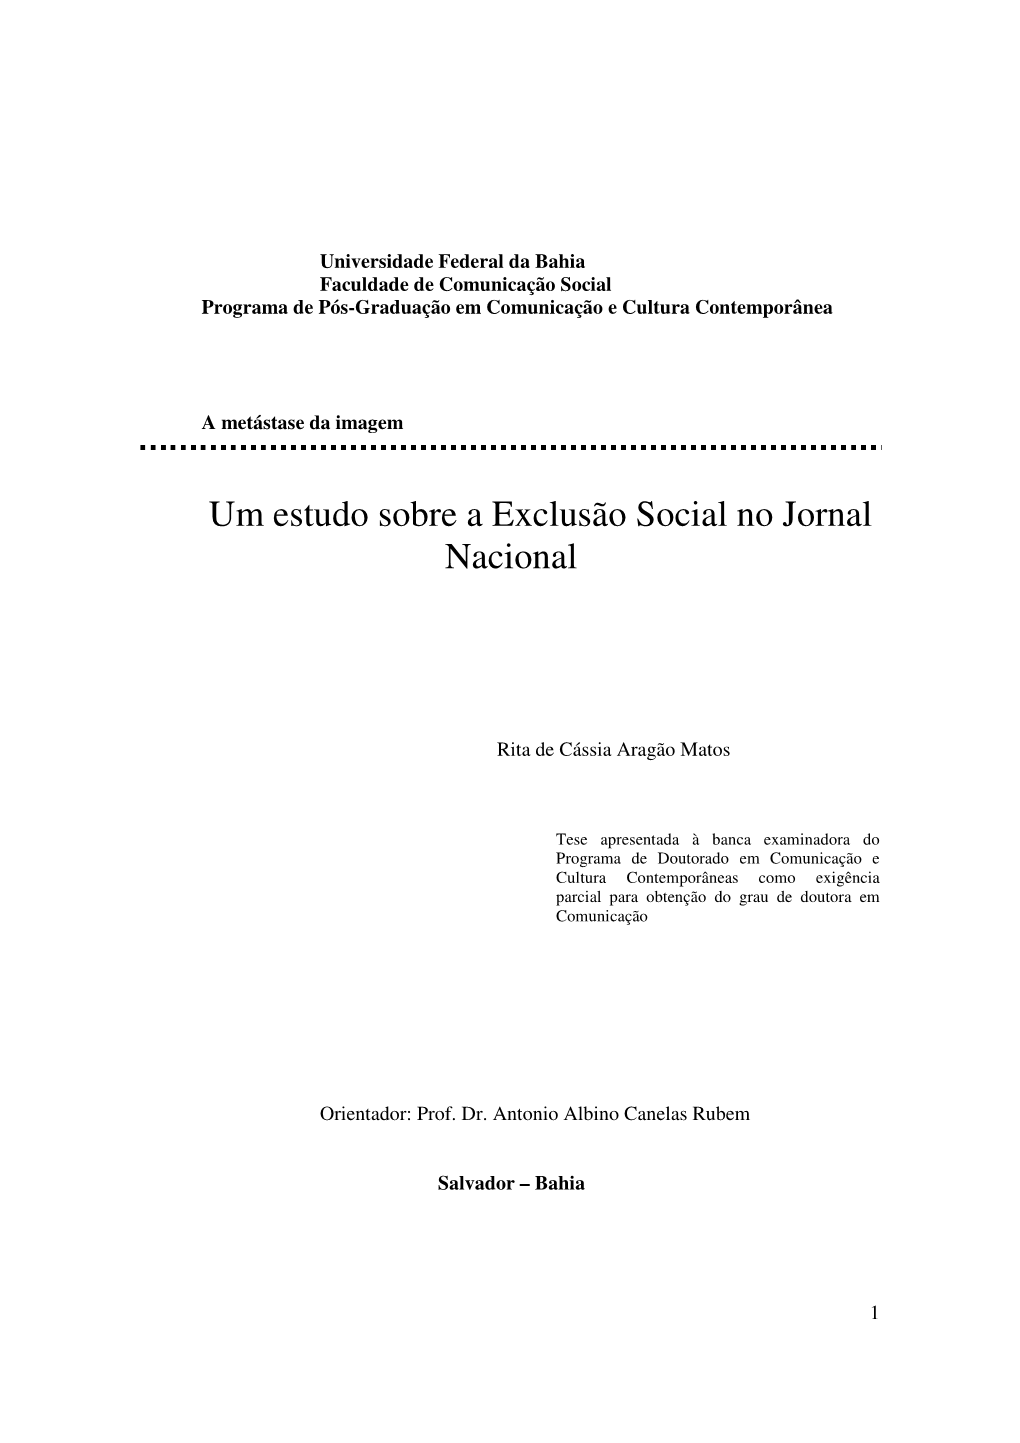 Um Estudo Sobre a Exclusão Social No Jornal Nacional